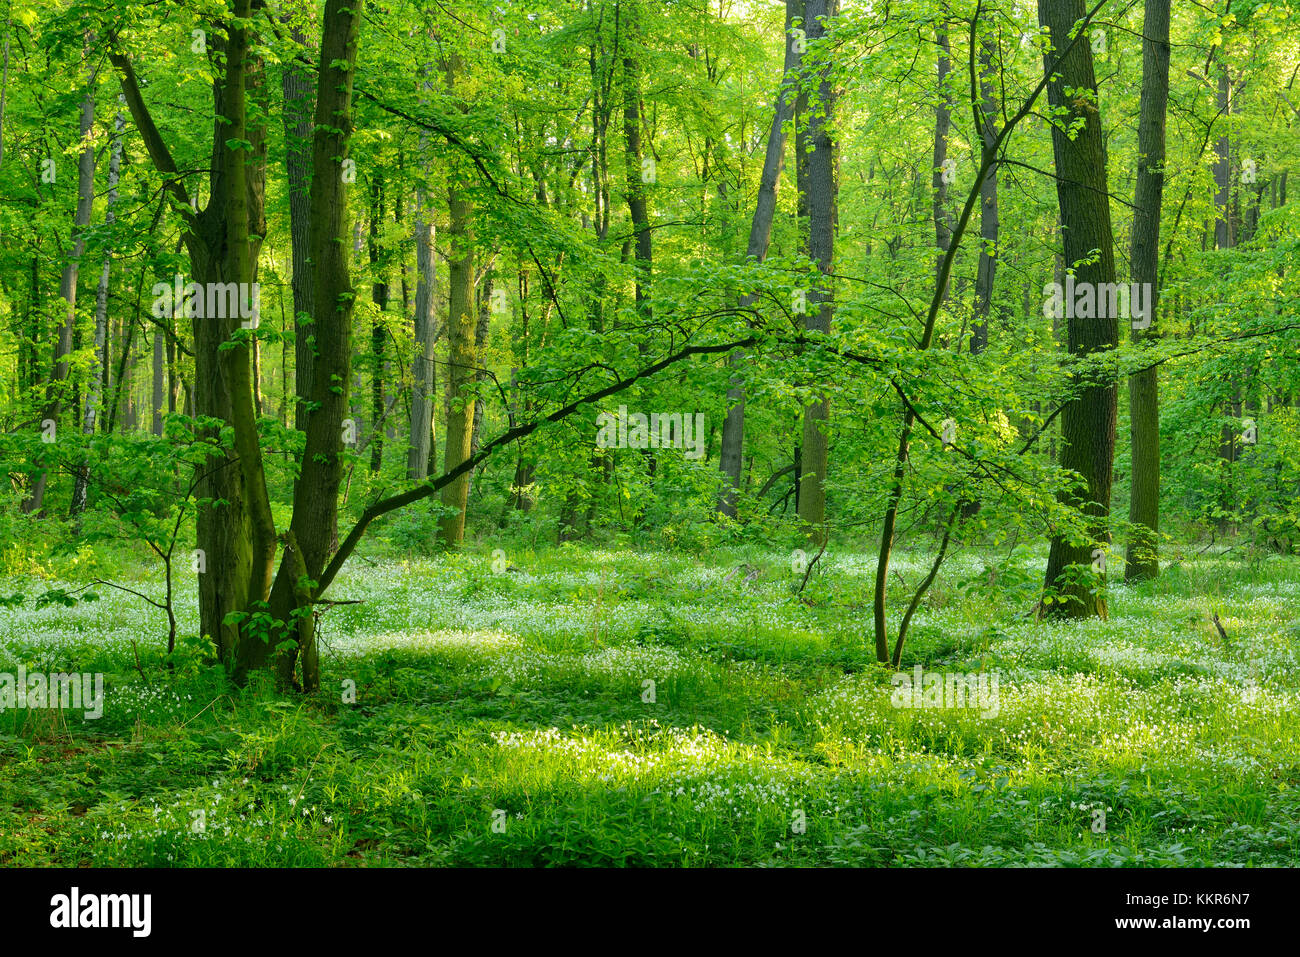 Naturnahe Laubwälder im Frühjahr, früh blühende Pflanzen bedecken den Boden, in der Nähe von freyburg, Sachsen - Anhalt, Deutschland Stockfoto